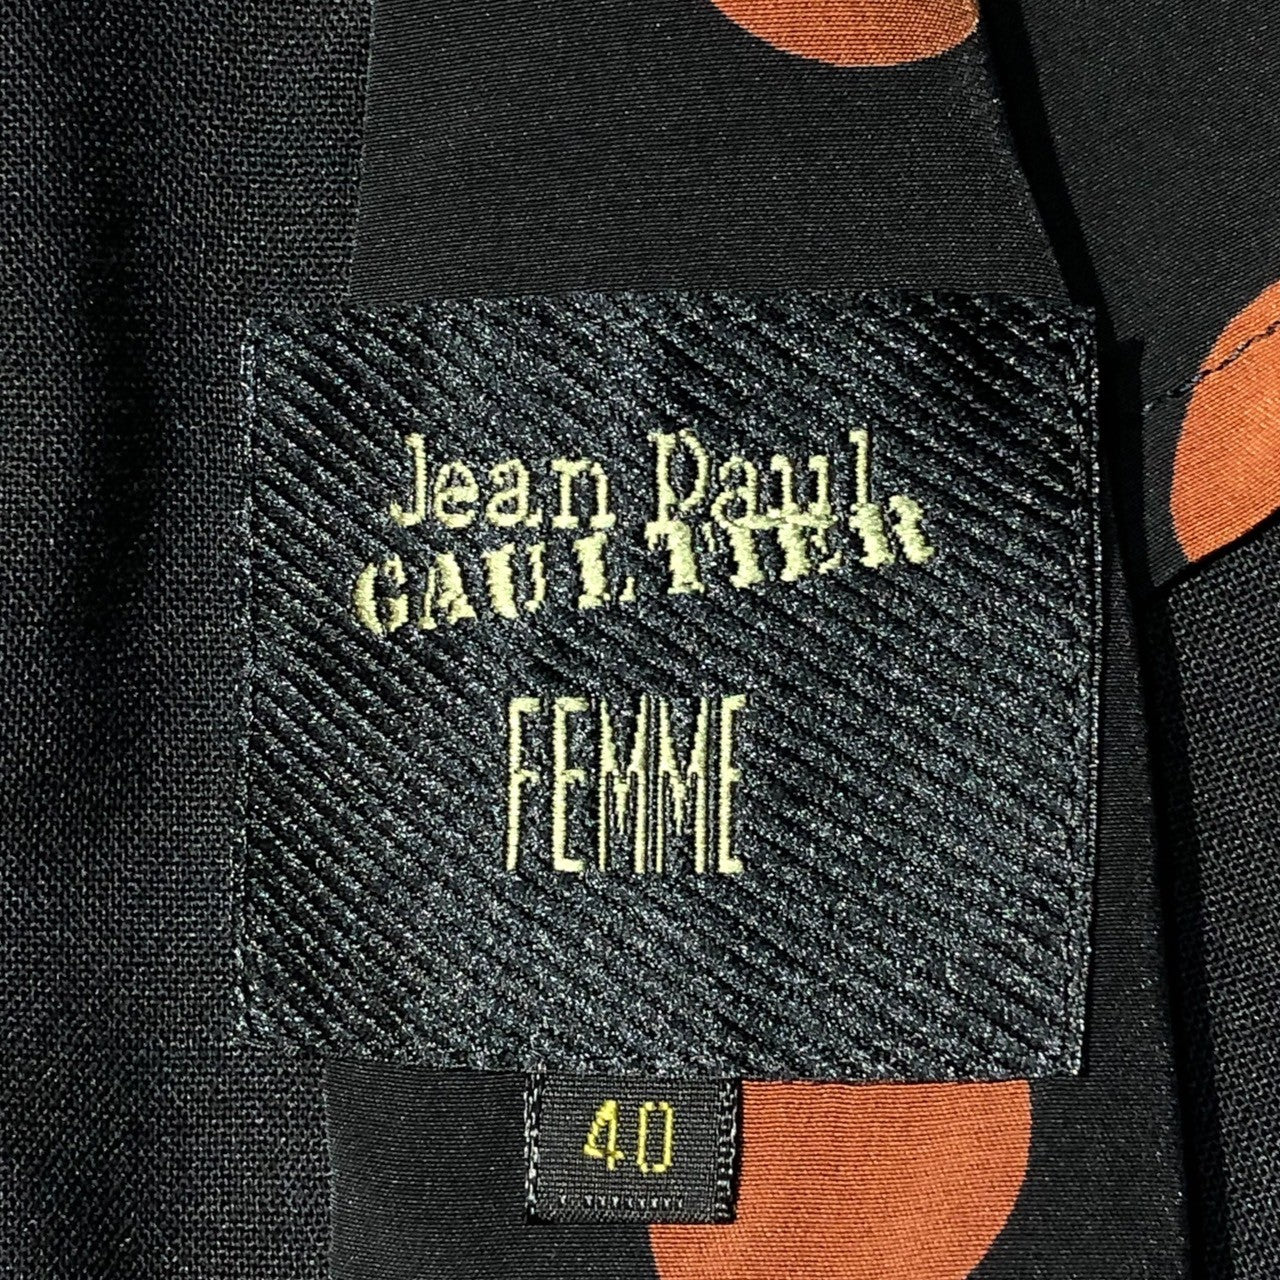 Jean Paul GAULTIER FEMME(ジャンポールゴルチエファム) 90's Design 